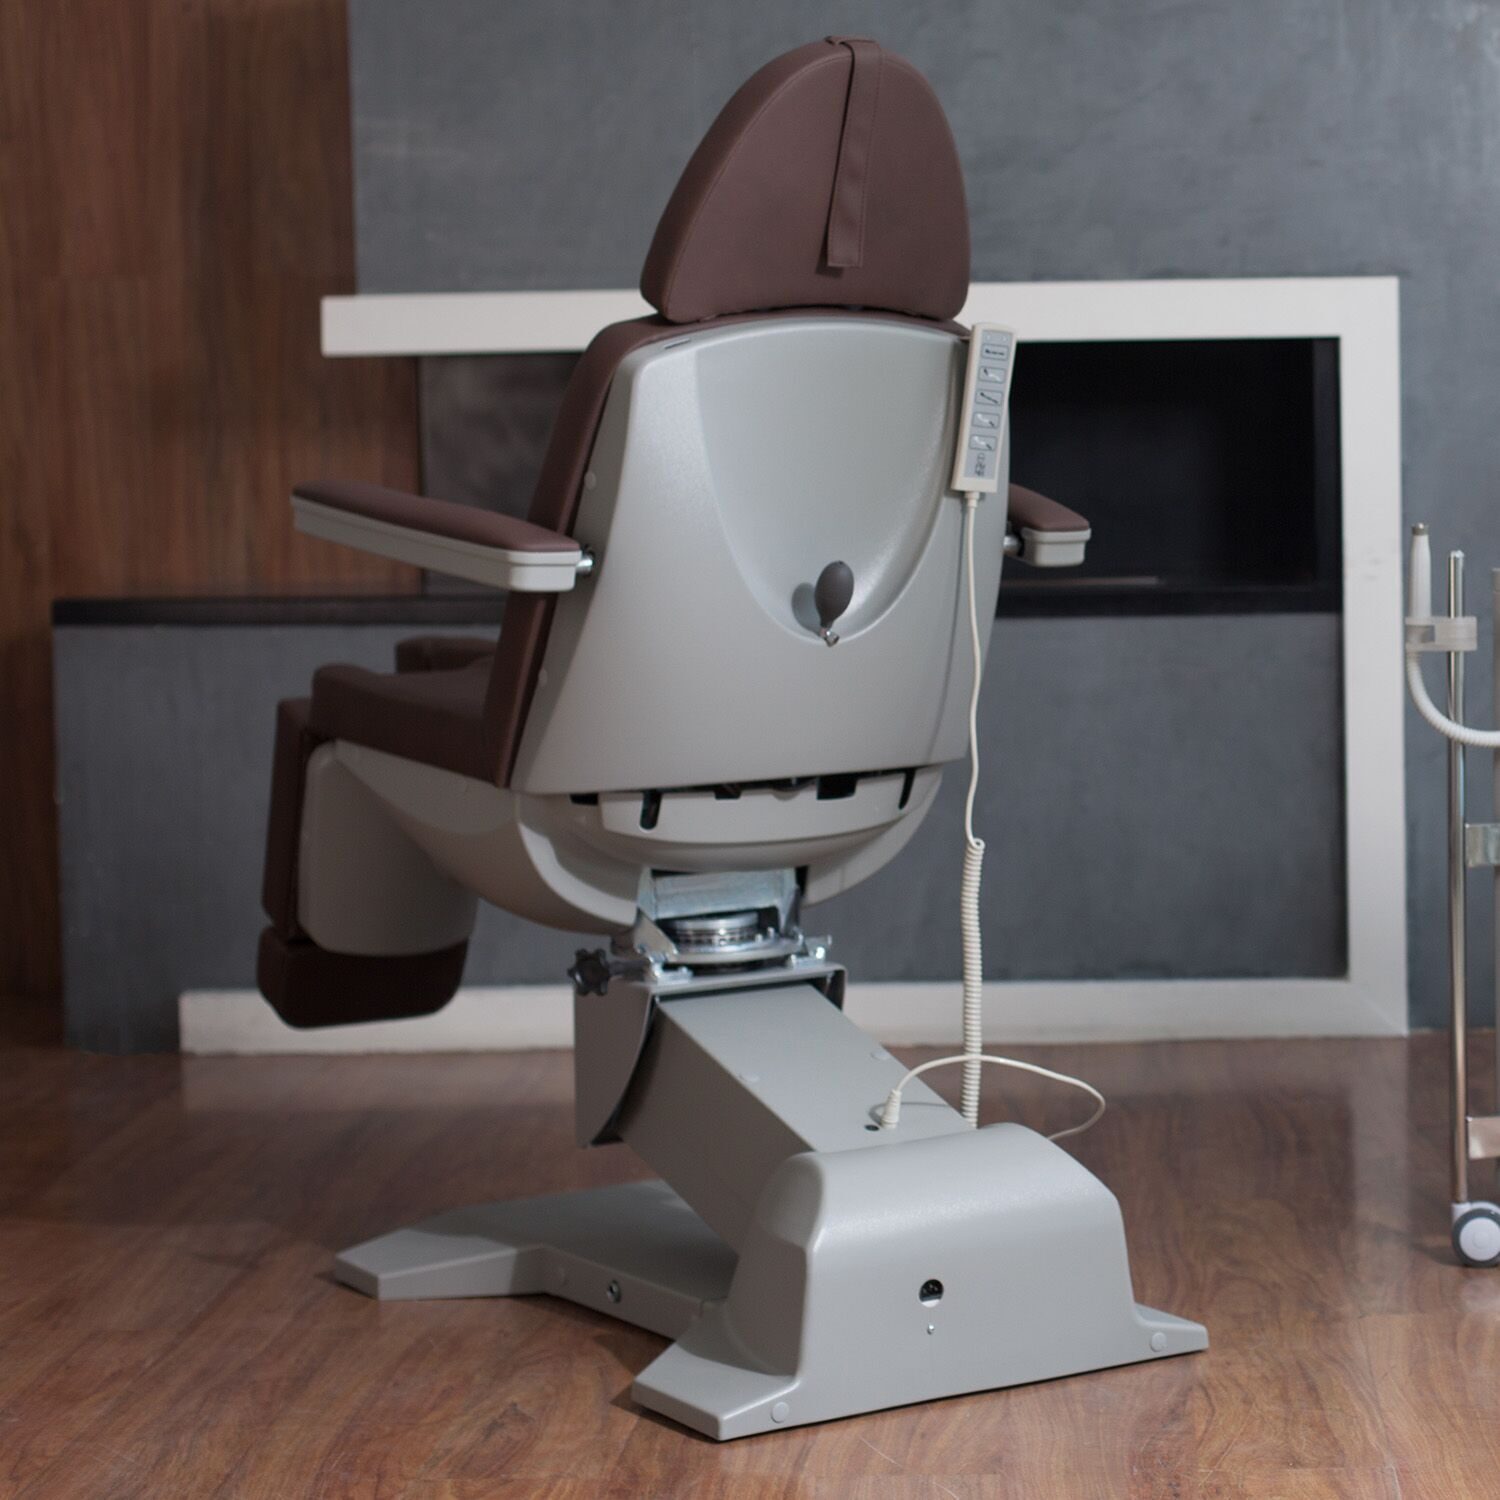 Sigma 5.0. Педикюрное кресло Сигма 5.0. Педикюрное кресло Сигма 3,0. Педикюр но кресло Сигма 5. Кресло педикюрное Sigma кабинет.